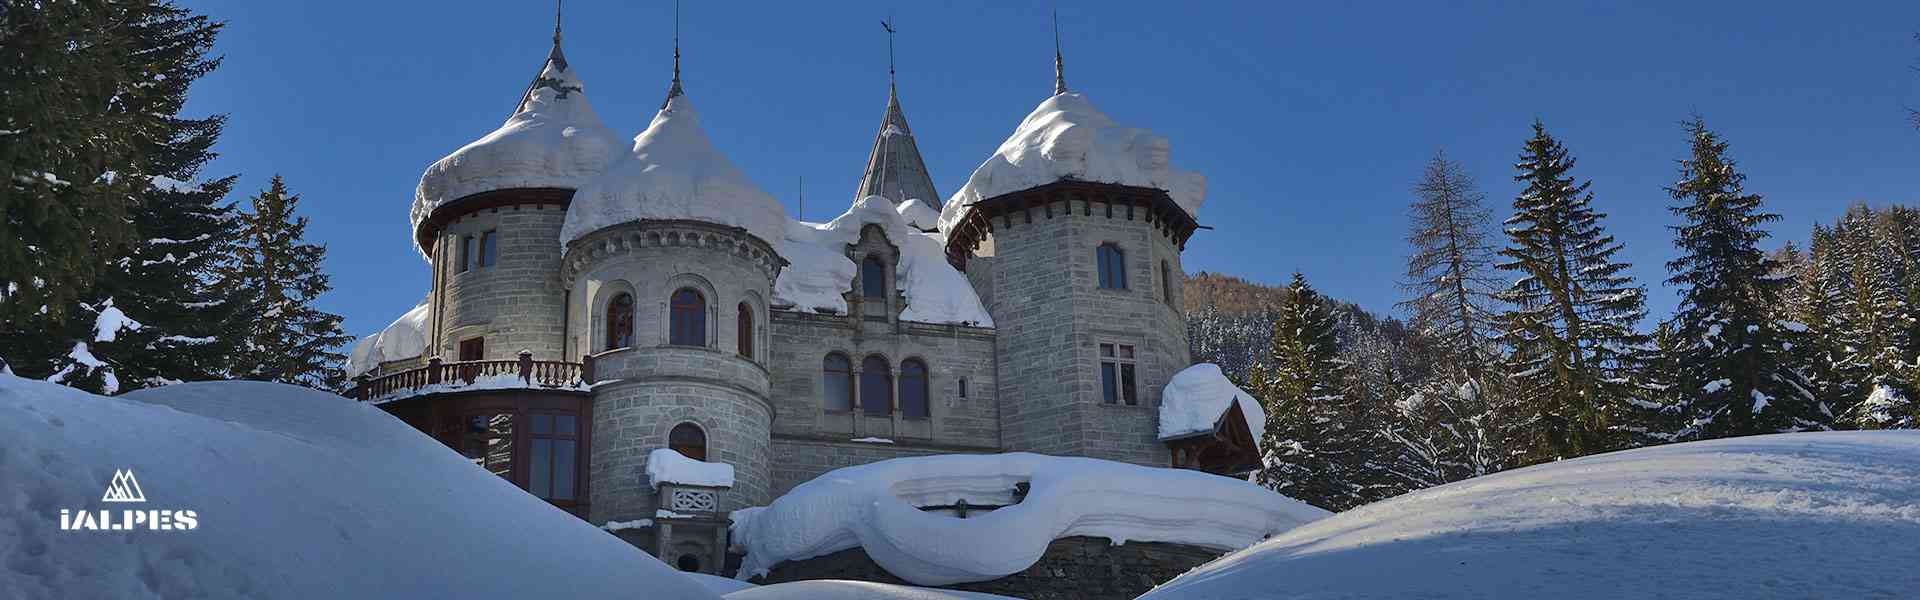 Château Savoie à Gressoney-Saint-Jean en Vallée d'Aoste, Italie 